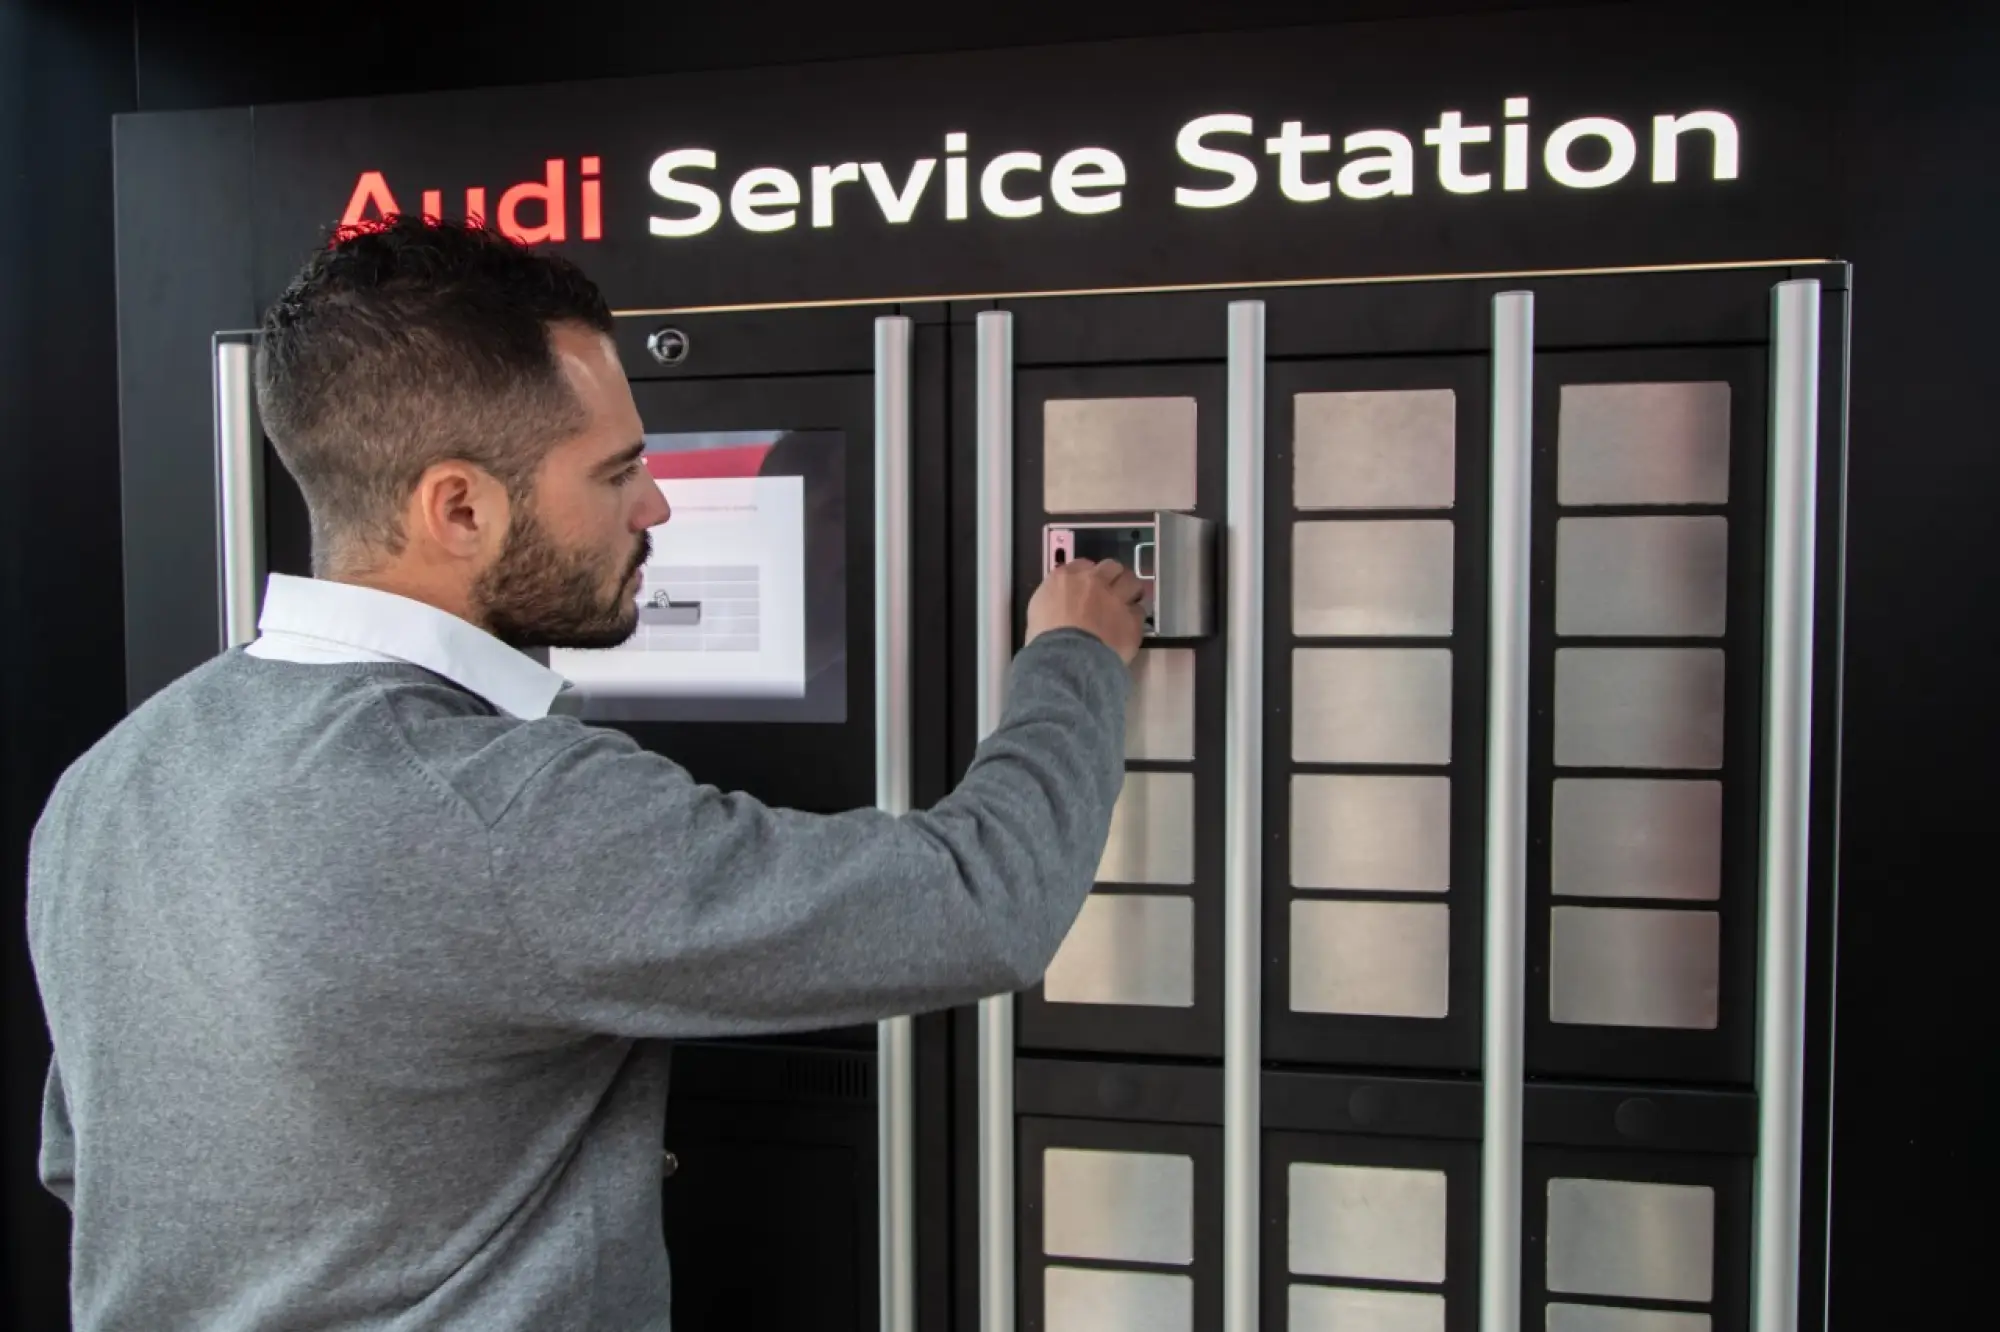 Audi Service Station - Bologna - 12